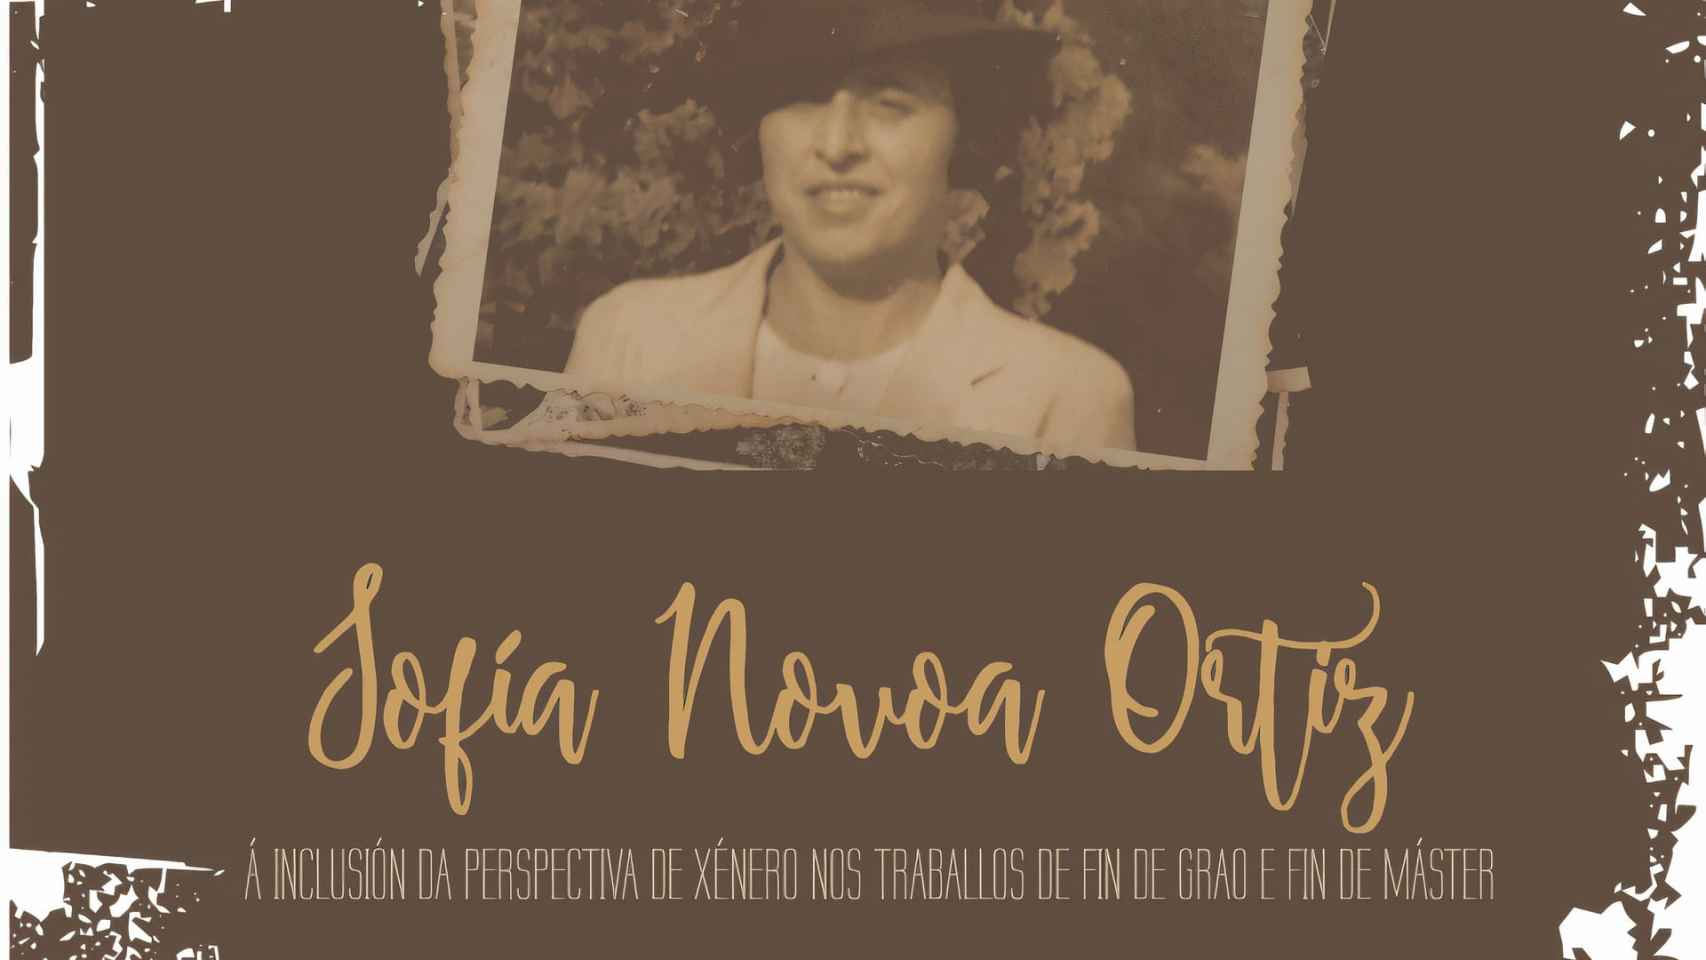 Cartel de los premios Sofía Novoa.